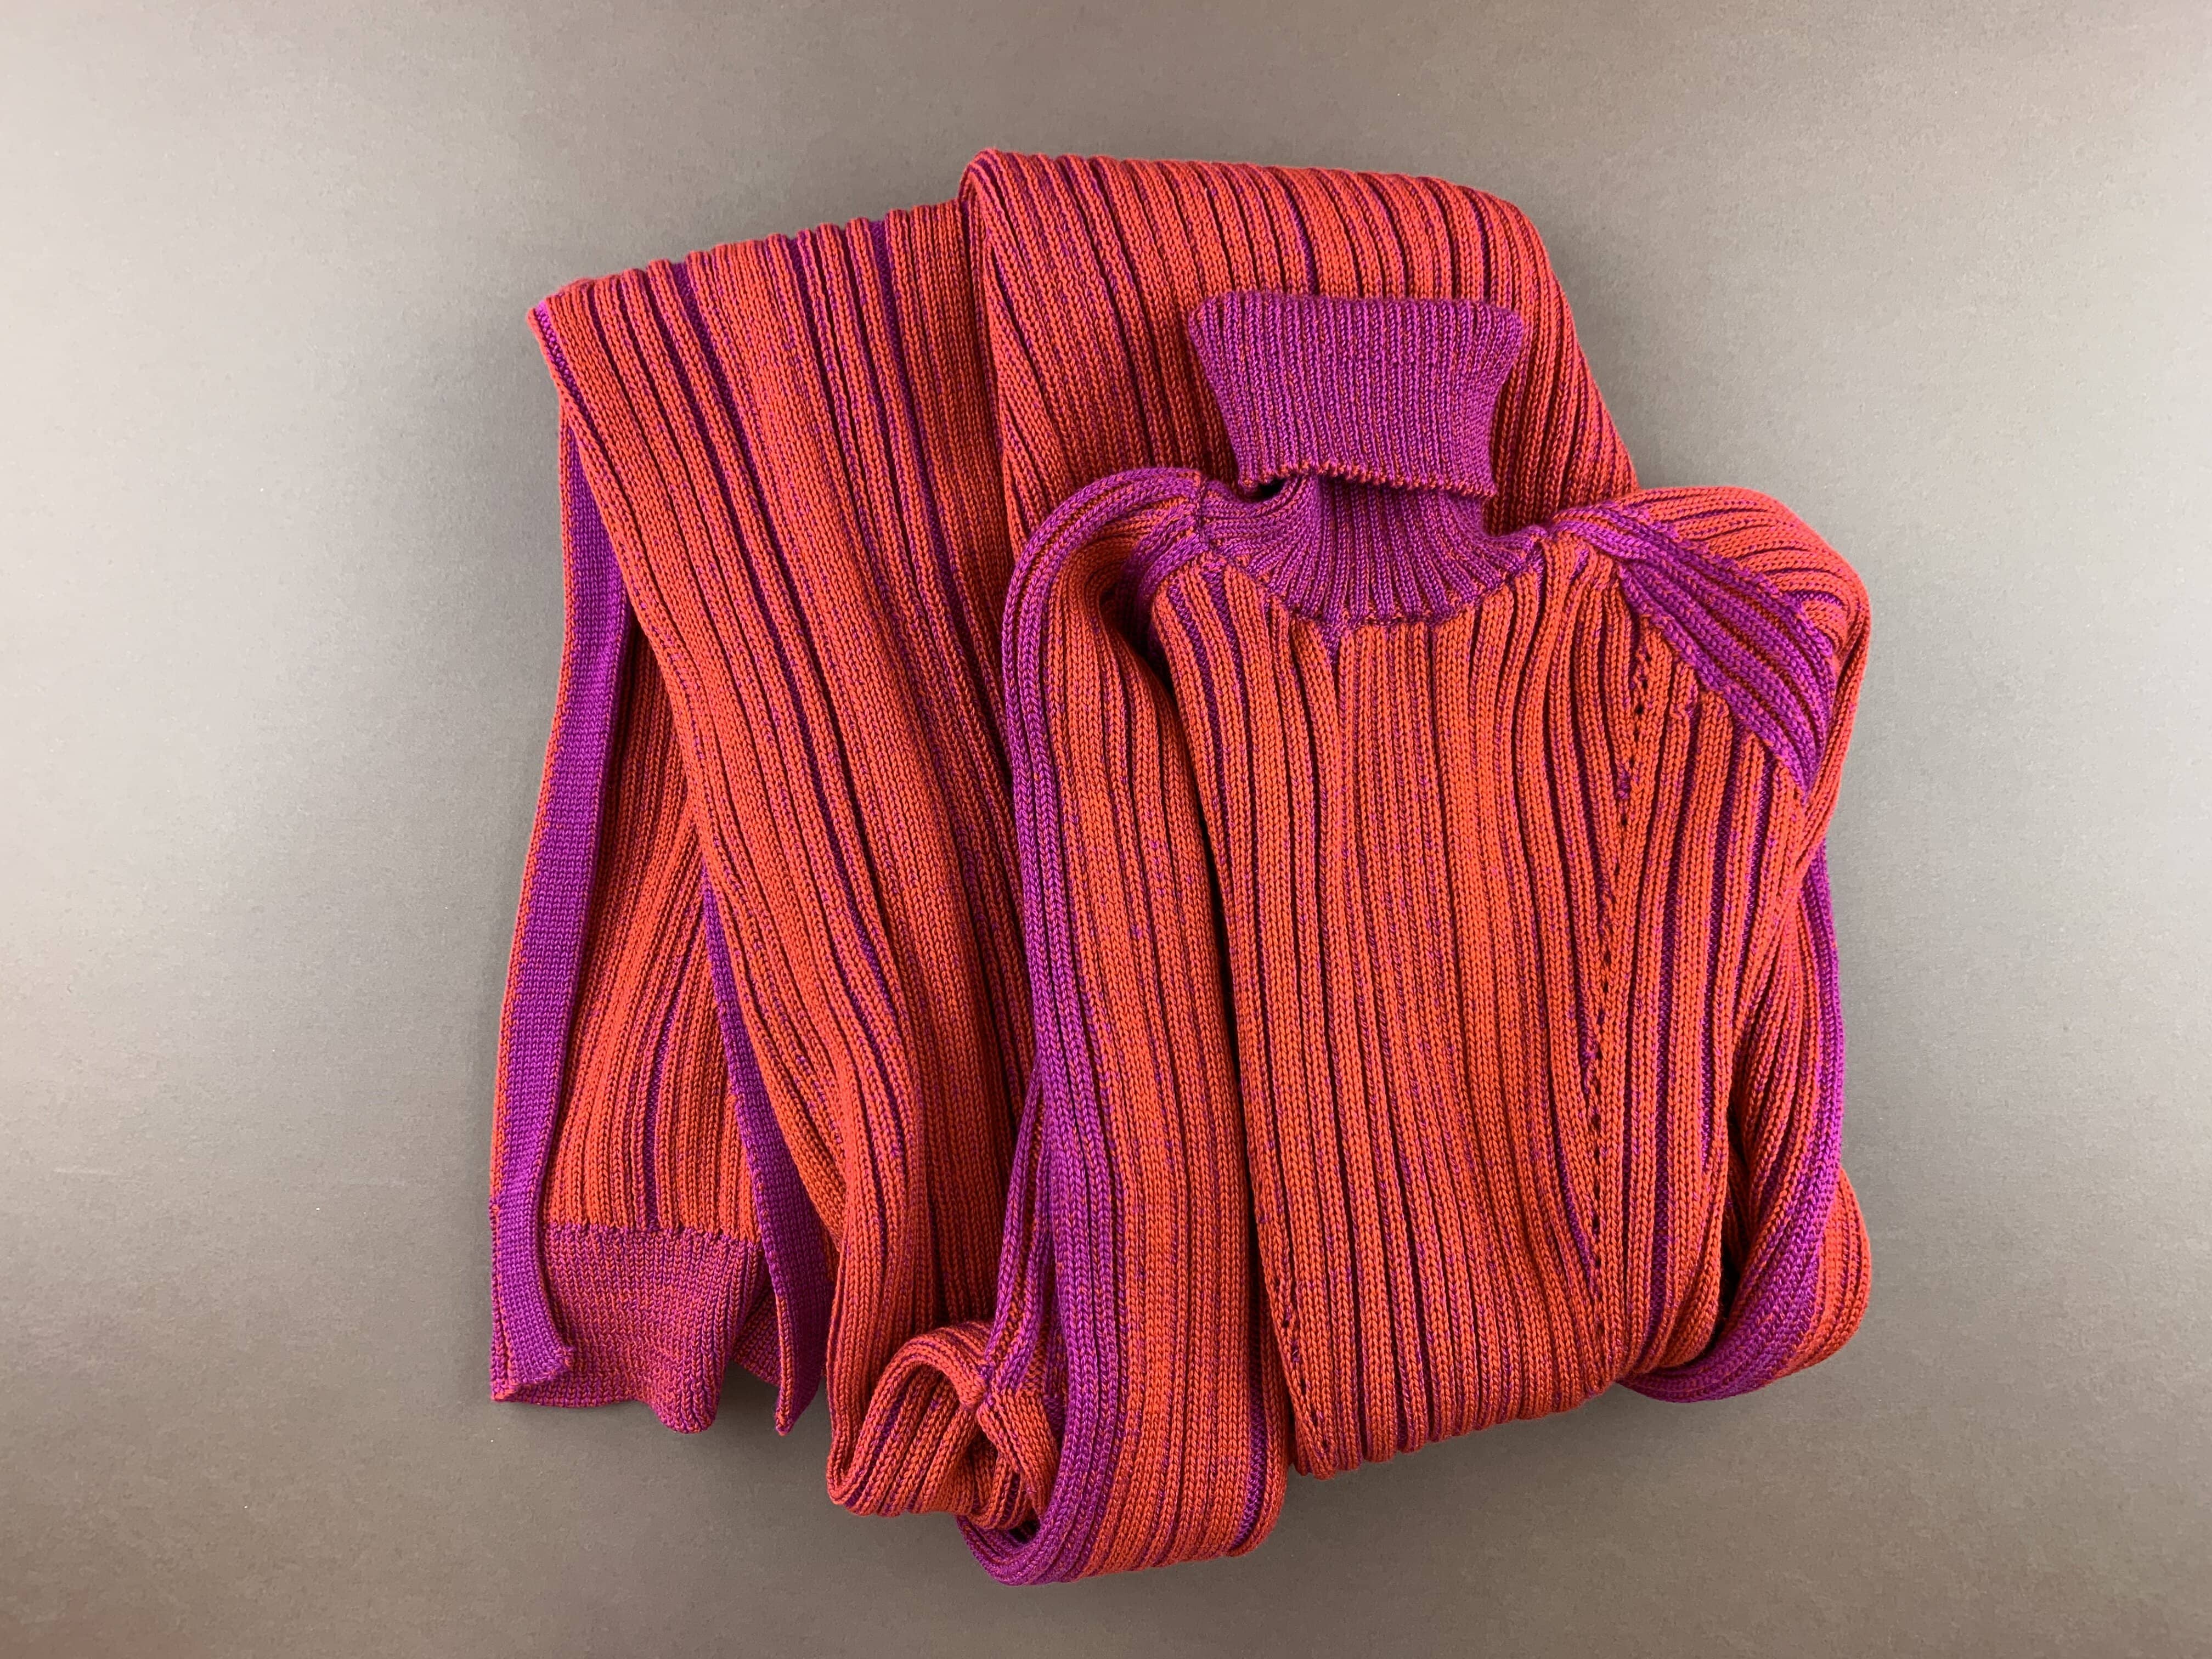 Knitwear in Biella Yarn at Pitti Filati. © Suedwolle Group